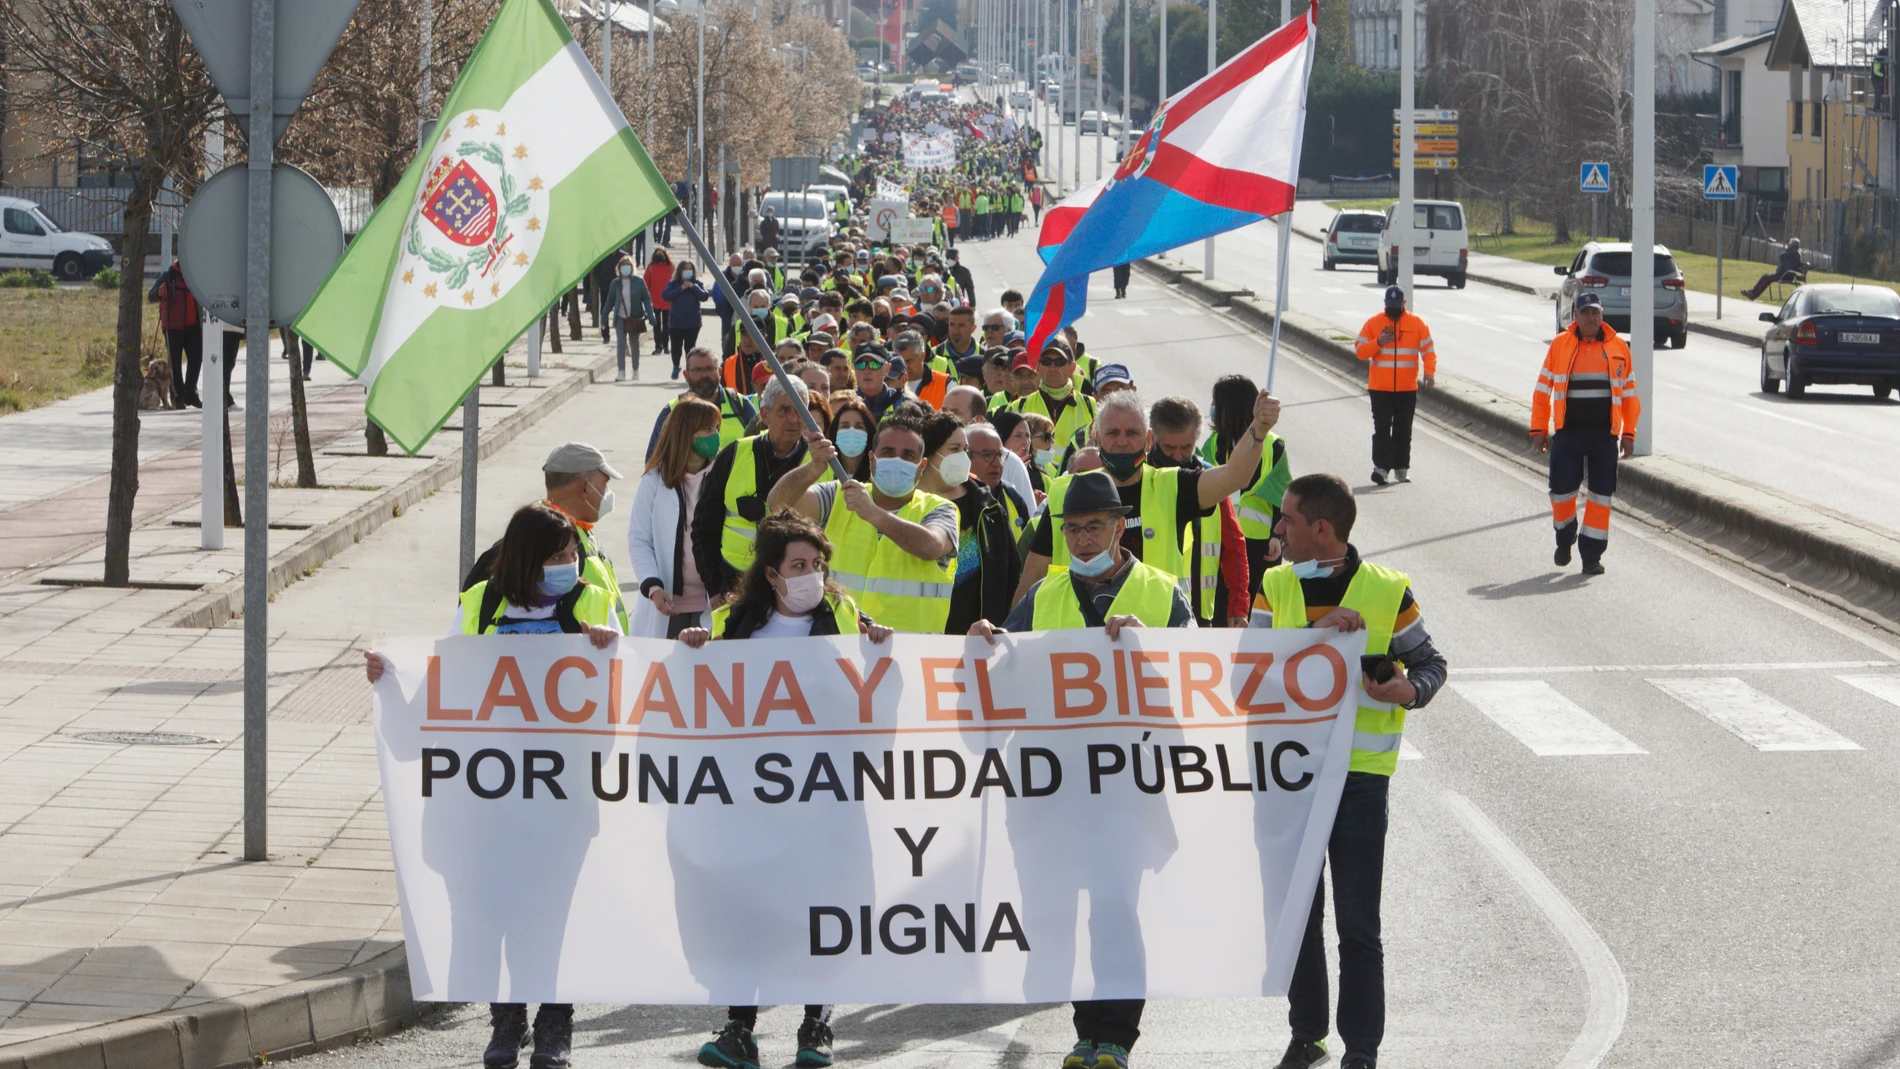 Última etapa de la marcha a pie en defensa de la sanidad pública de Laciana y del Bierzo, con llegada al hospital del Bierzo